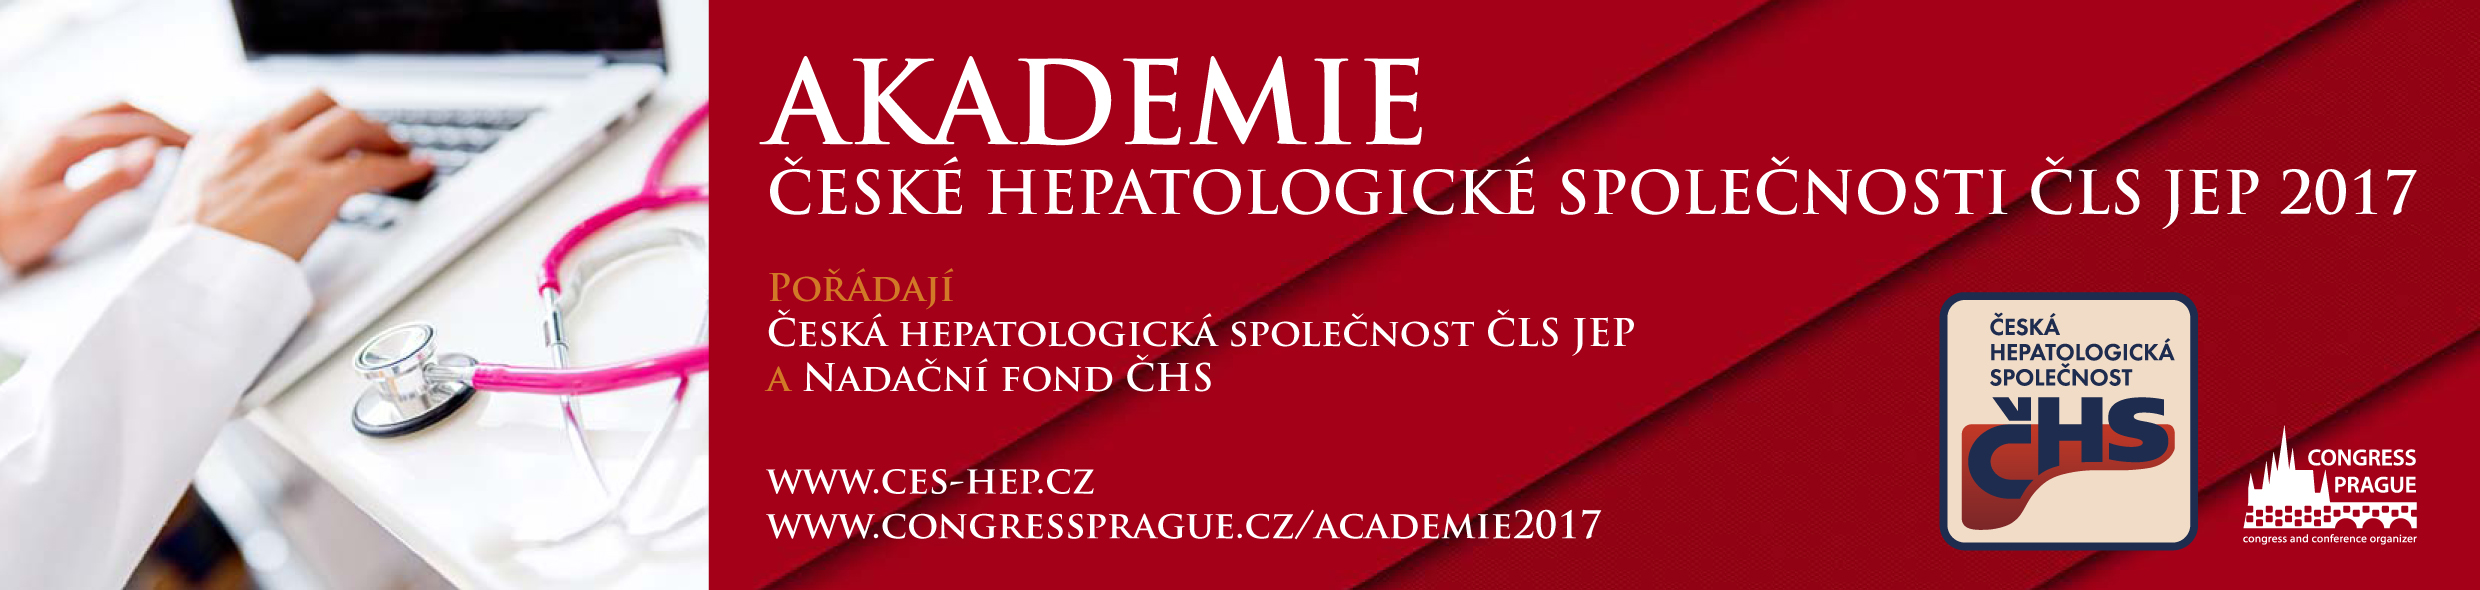 Akademie České hepatologické společnosti ČLS JEP 2017